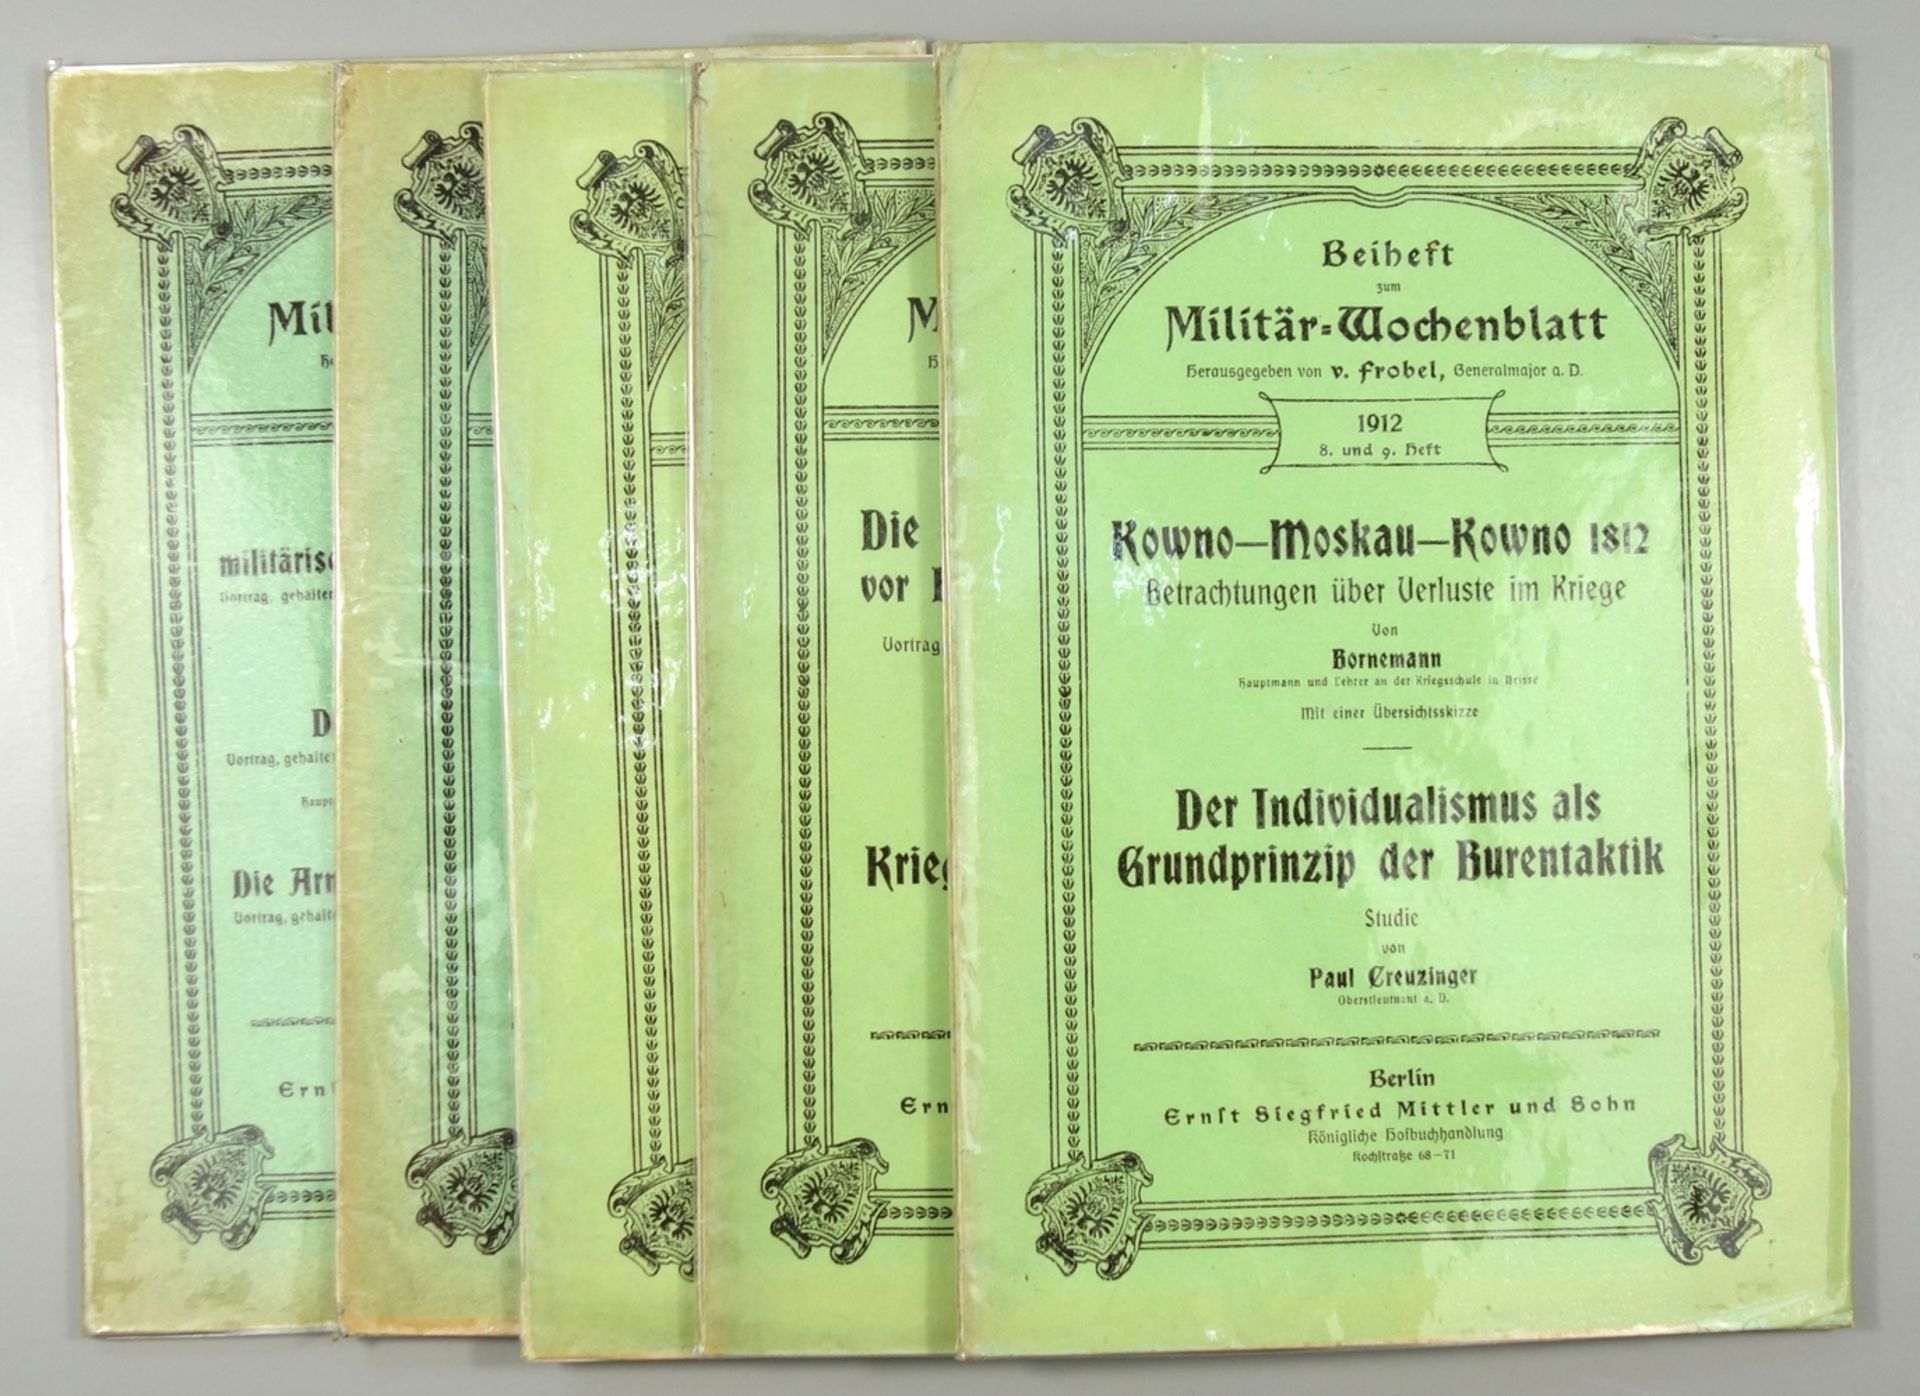 5 Beihefte zum Militär-Wochenblatt, 1912 - 1914, Verlag Mittler und Sohn, Berlin; 8.und 9.Heft